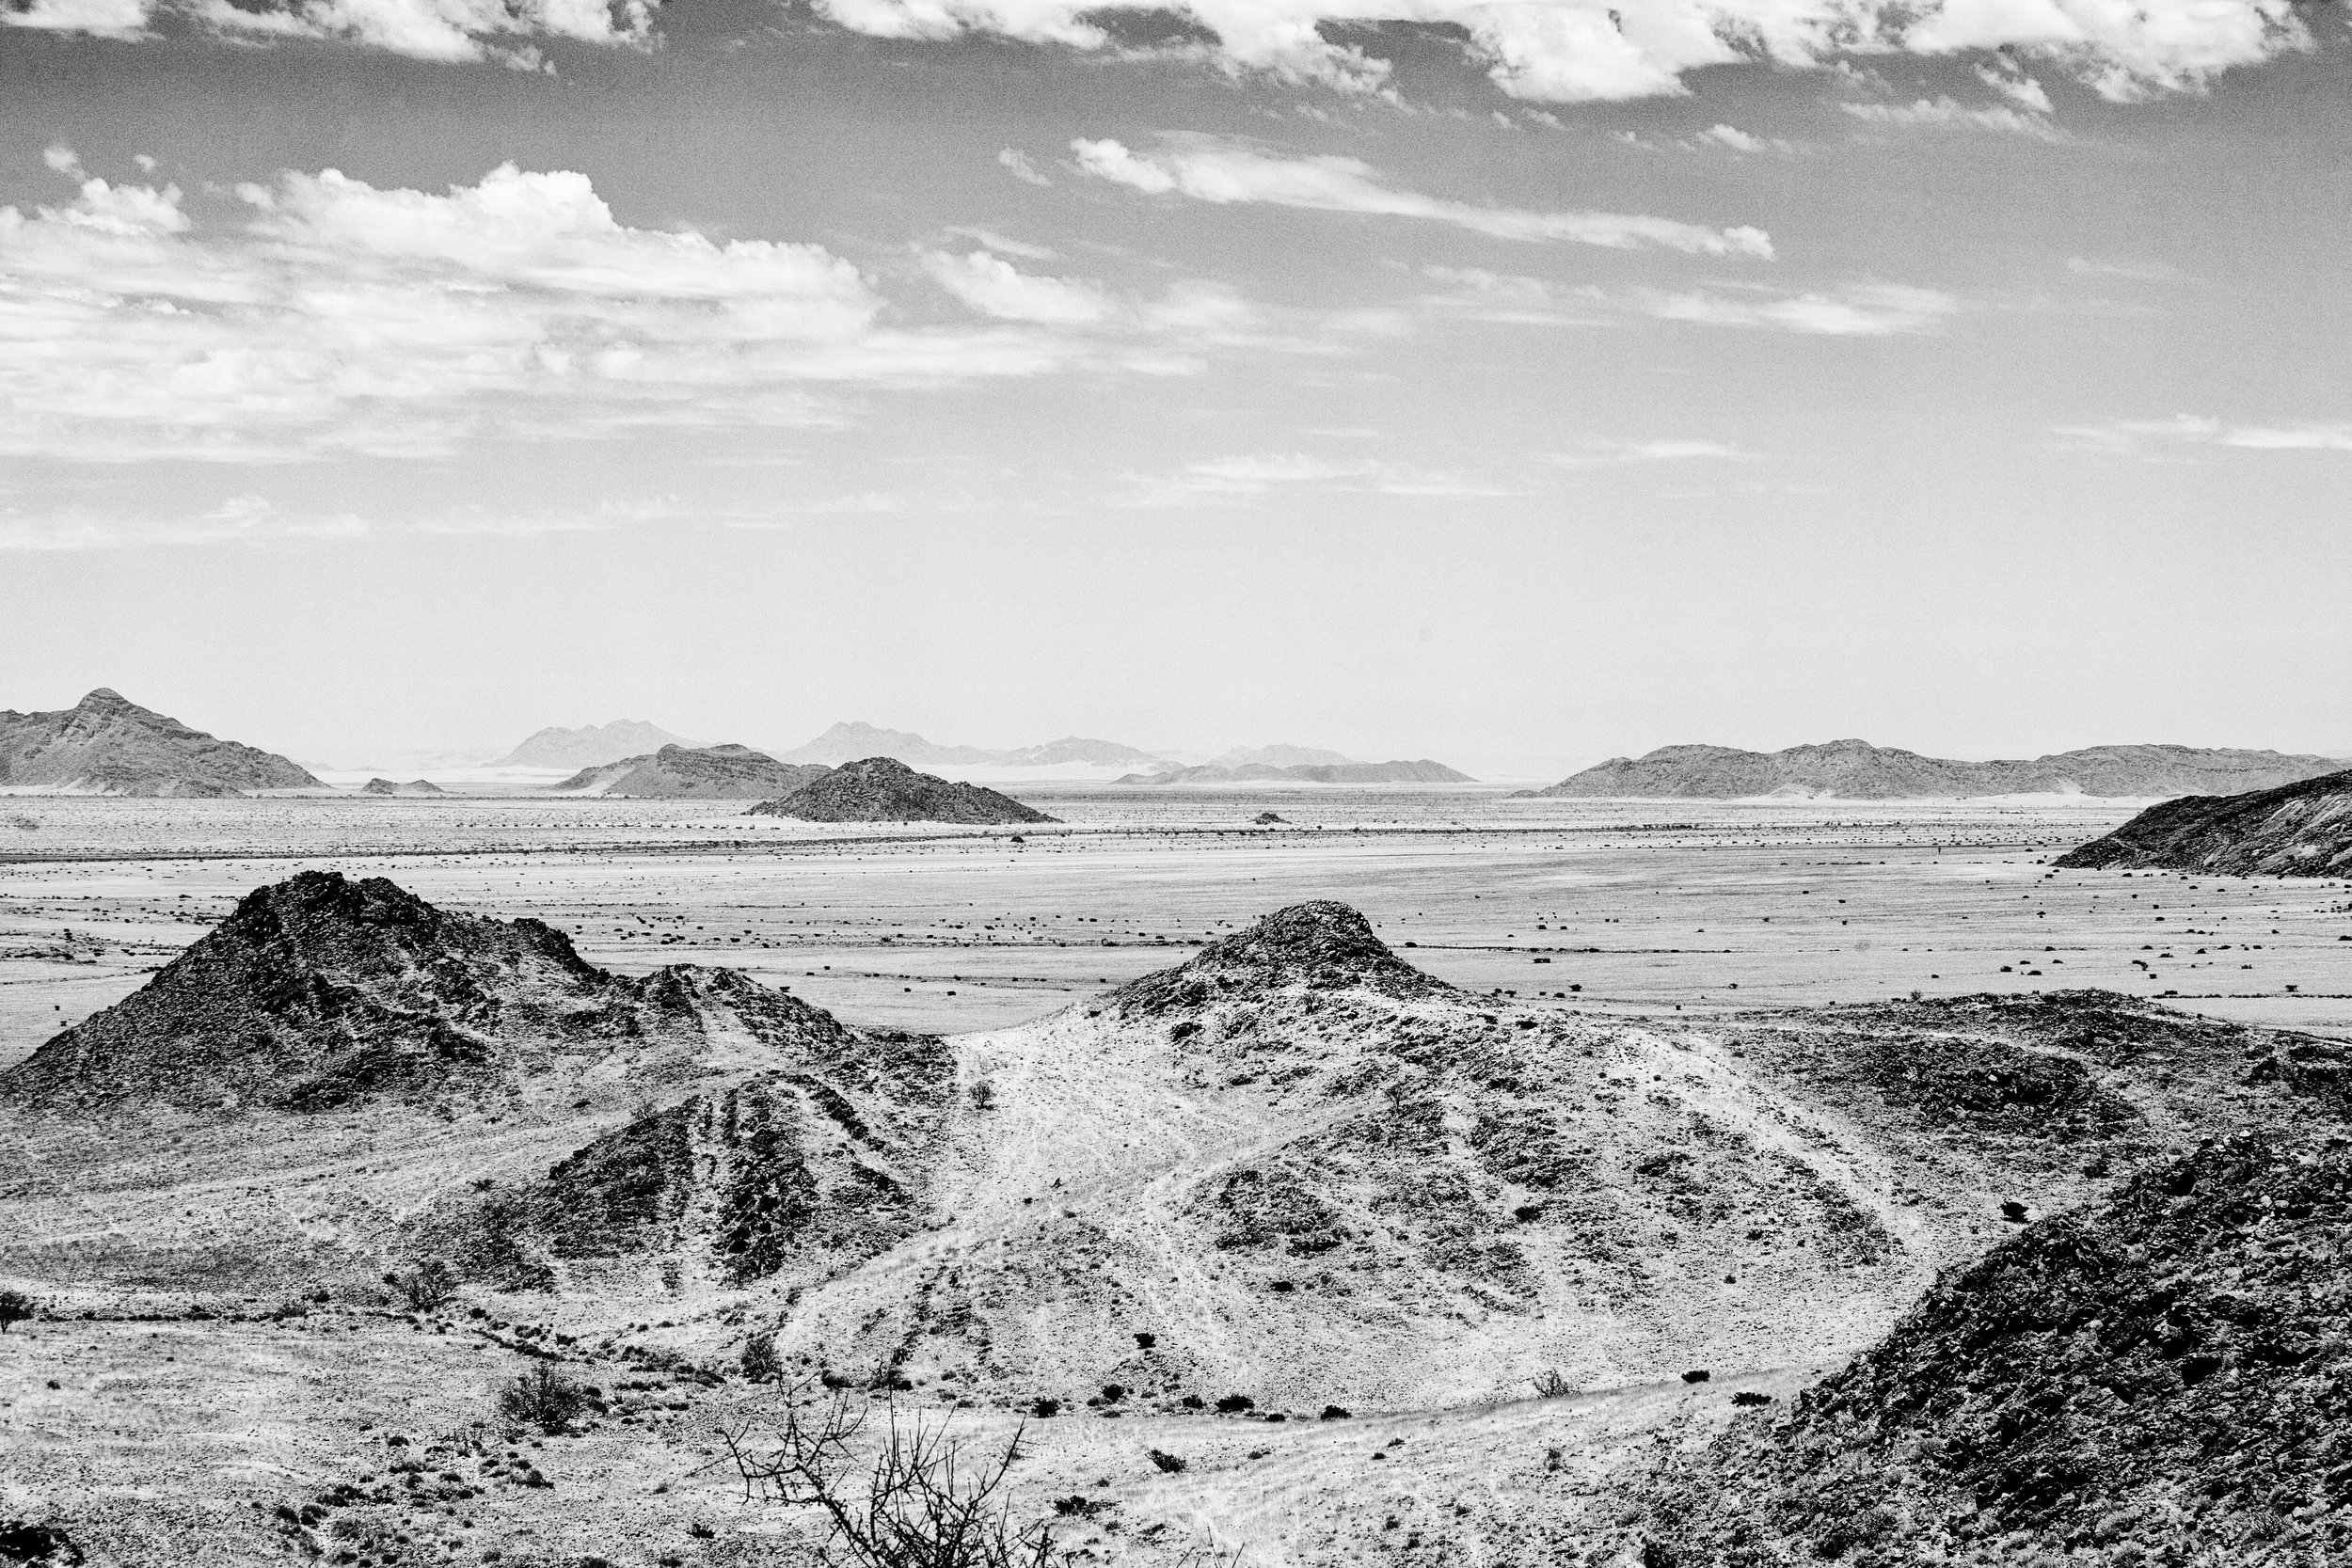  Namib-Naukluft mountains